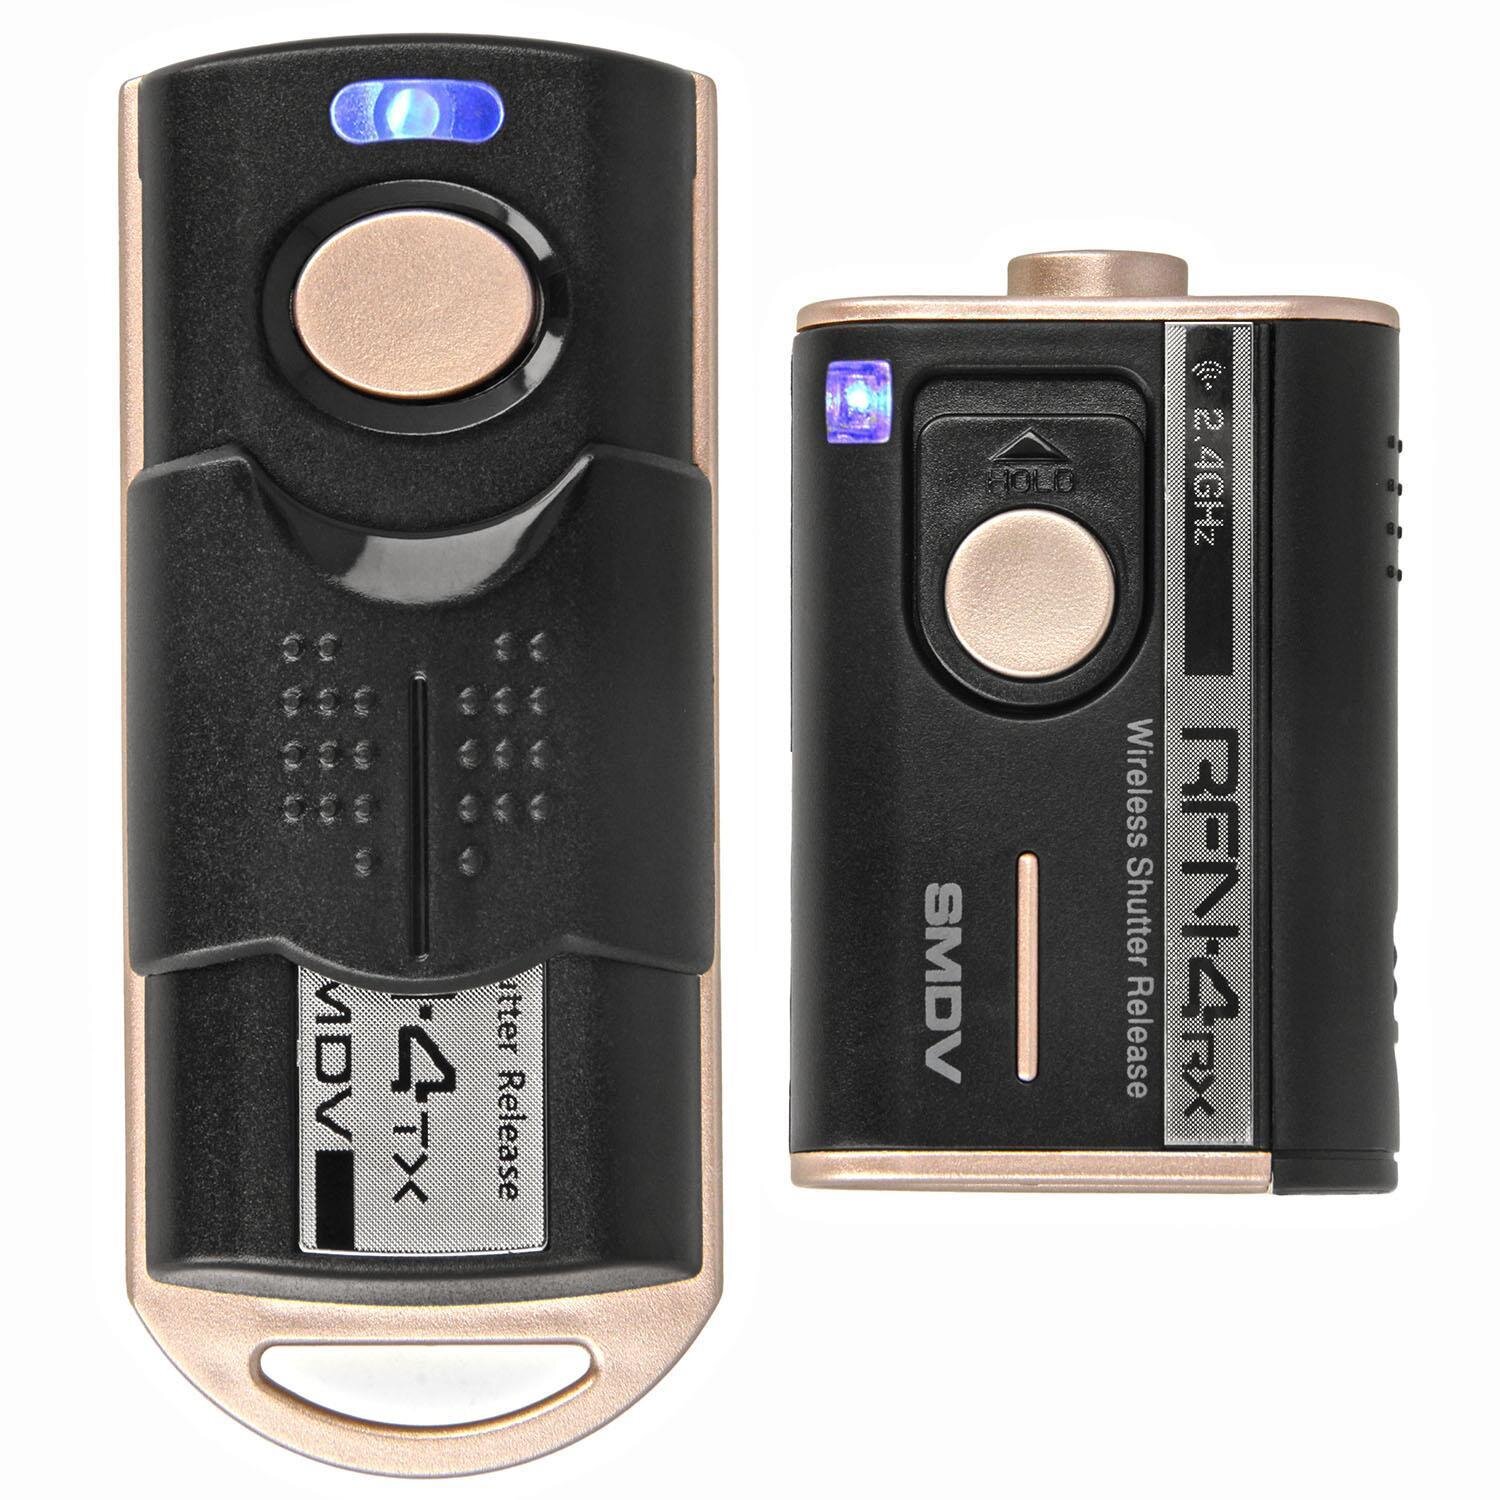 Impulsfoto SMDV RFN-4 RF-907 Kamera Fernauslöser, Kompatibel mit Sony und Minolta Kameras , 2,4Ghz, 16 Kanäle, Reichweite bis 100m